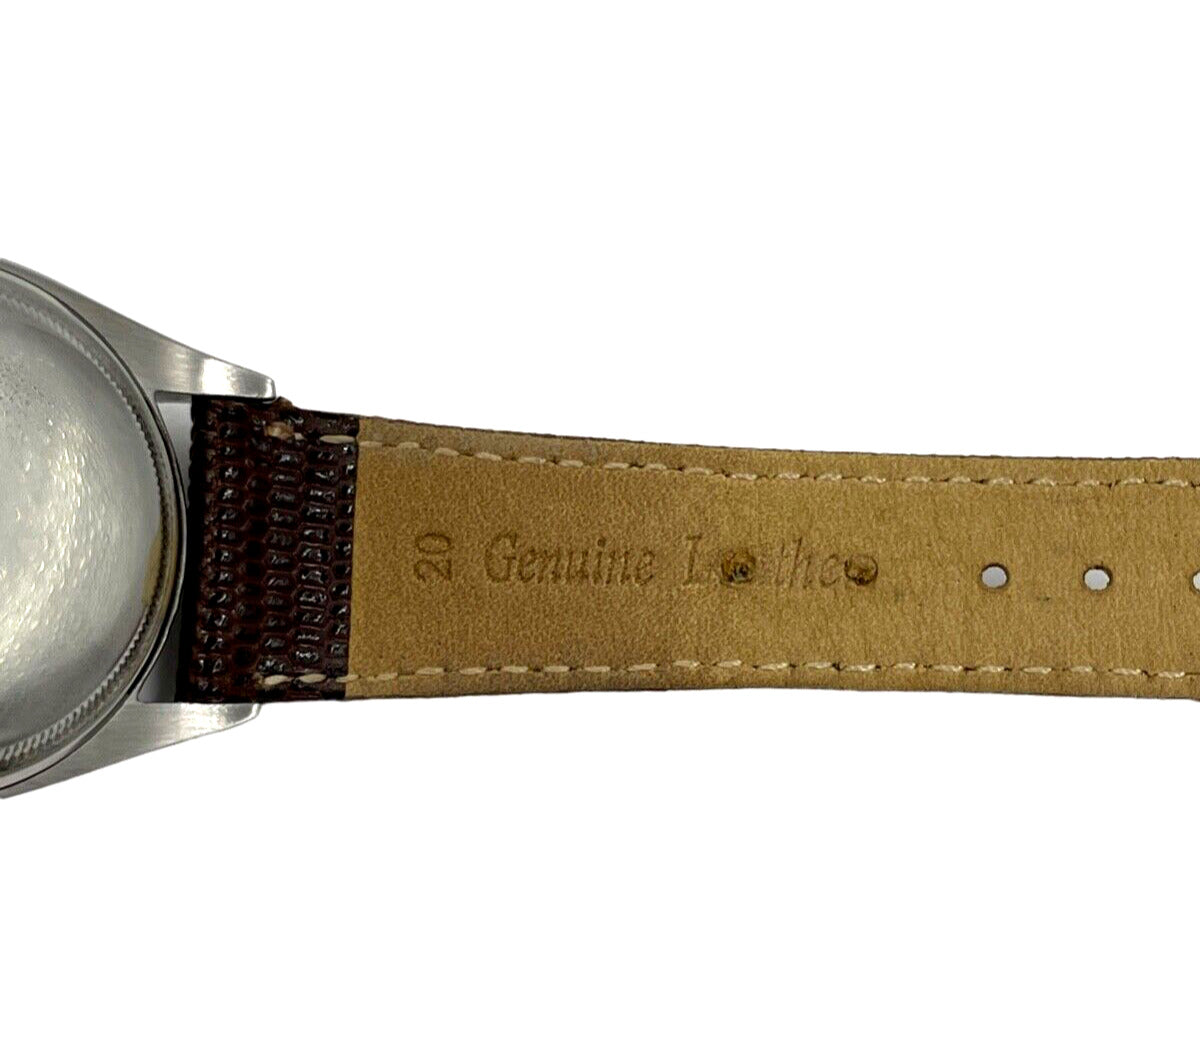 1953 Rolex Bubbleback 14K bezel Gold  Stainless Steel  Watch Ref. 6105